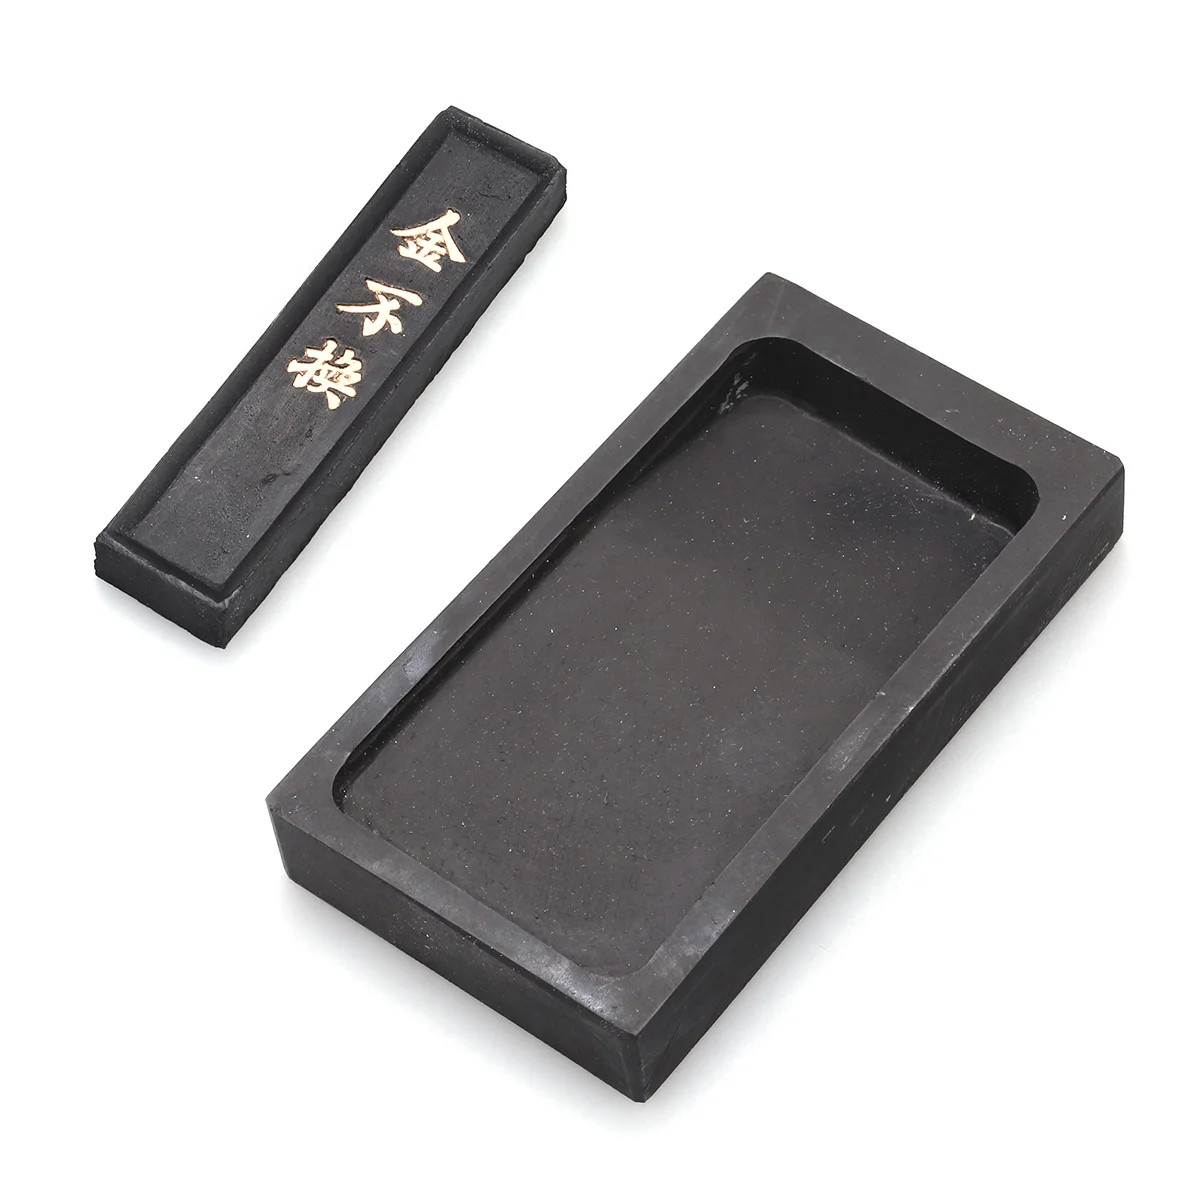 

Чернильный камень, чернильный камень, каллиграфия, живопись, Китайская традиционная шлифовальная чернильная палочка, блок наклеек, контейнер для тренировок, чернильная плитка